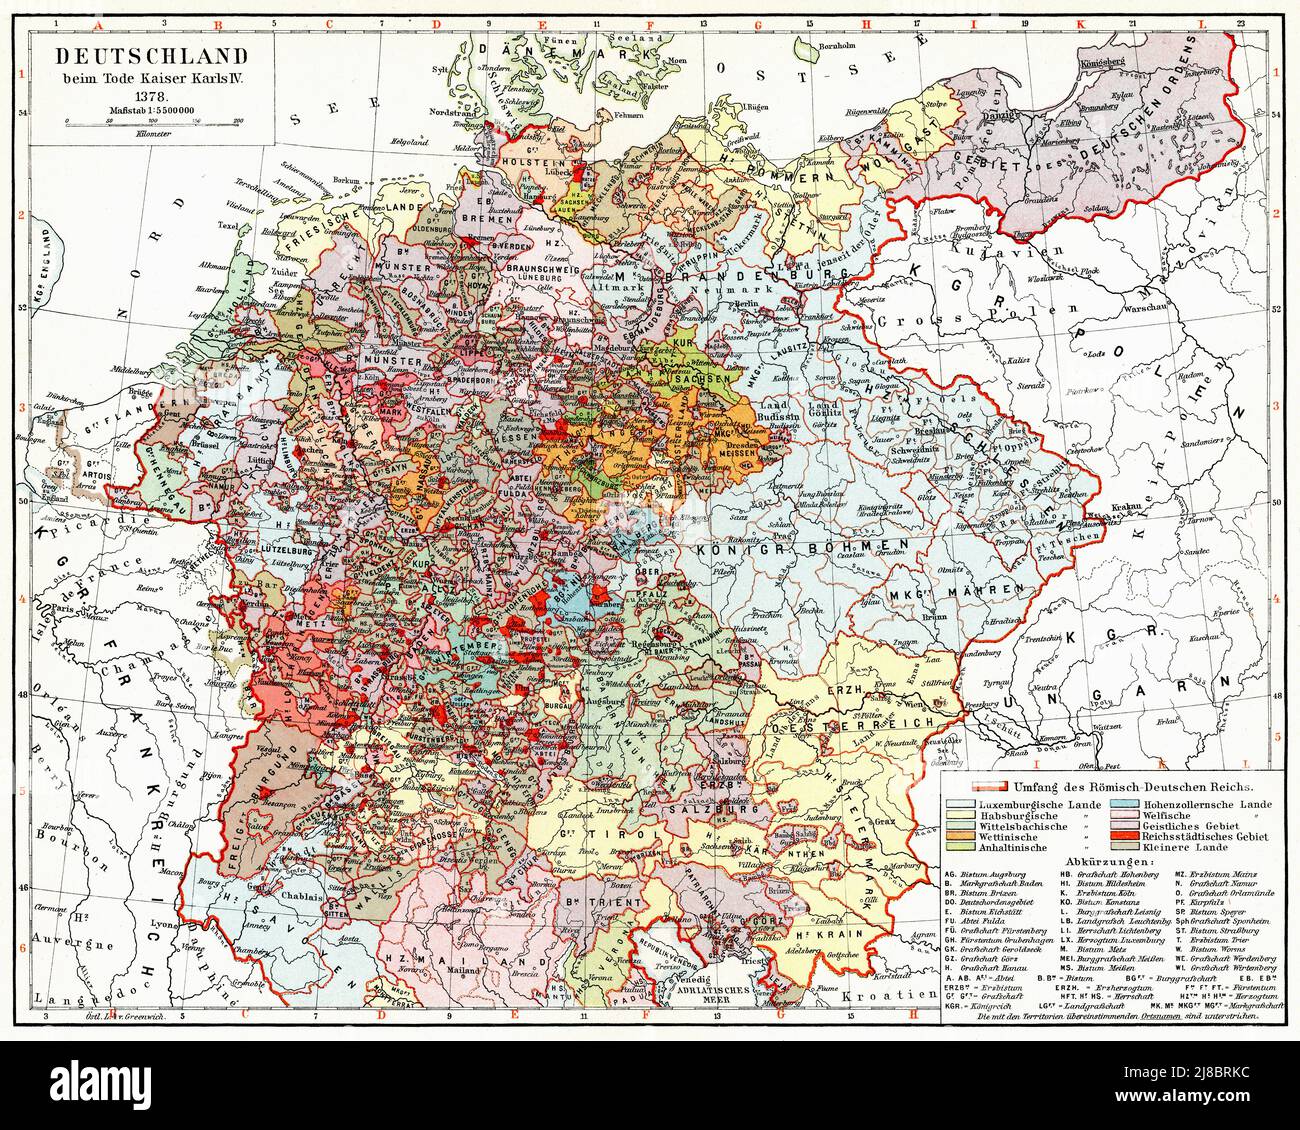 Mapa de Alemania después de la muerte del Kaiser Karl IV (1378). Publicación del libro 'Meyers Konversations-Lexikon', Volumen 2, Leipzig, Alemania, 1910 Foto de stock